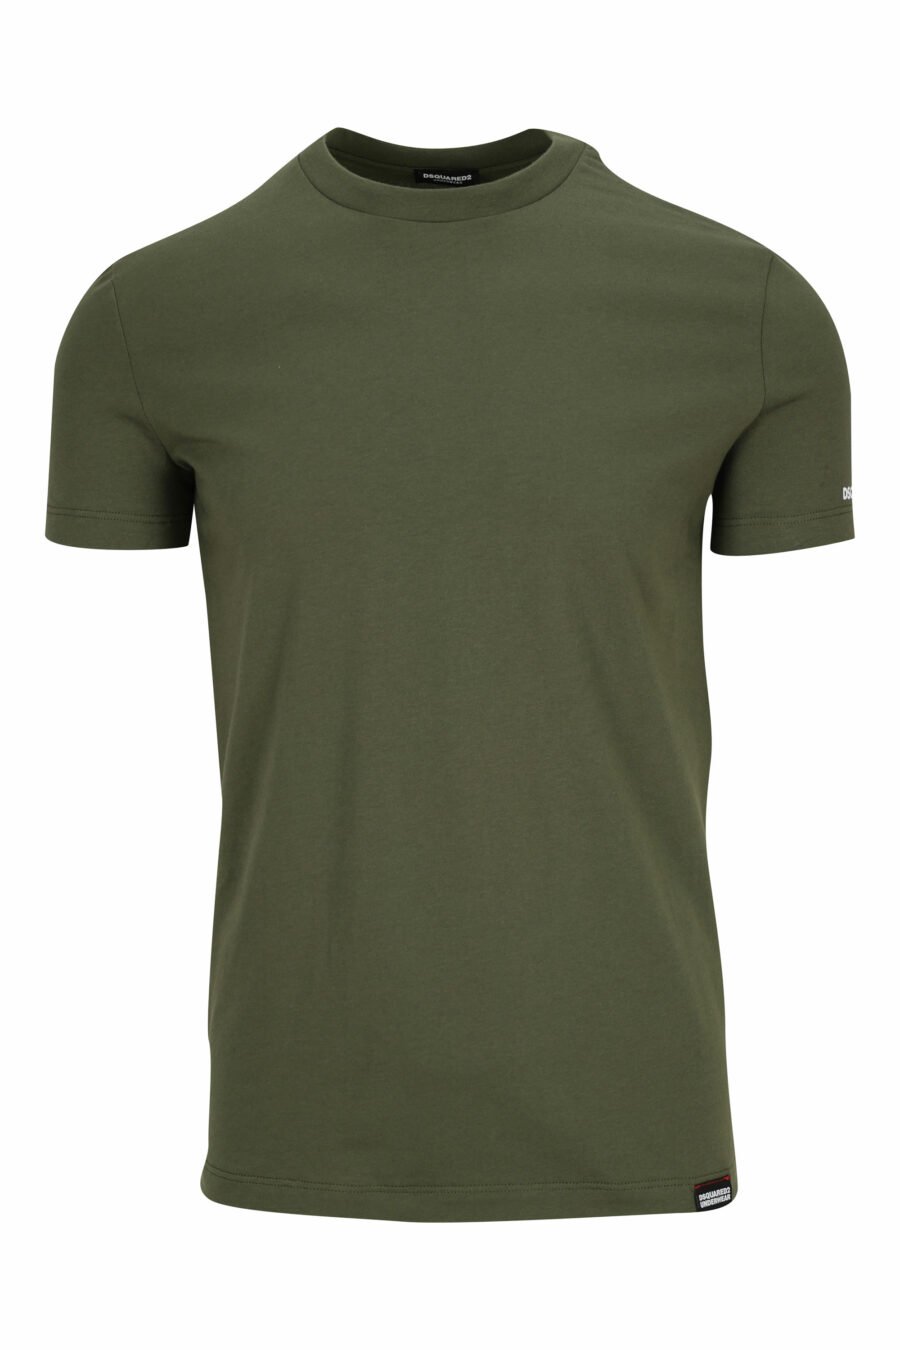 Militärgrünes T-Shirt mit weißer Unterwäsche minilogue - 8032674811622